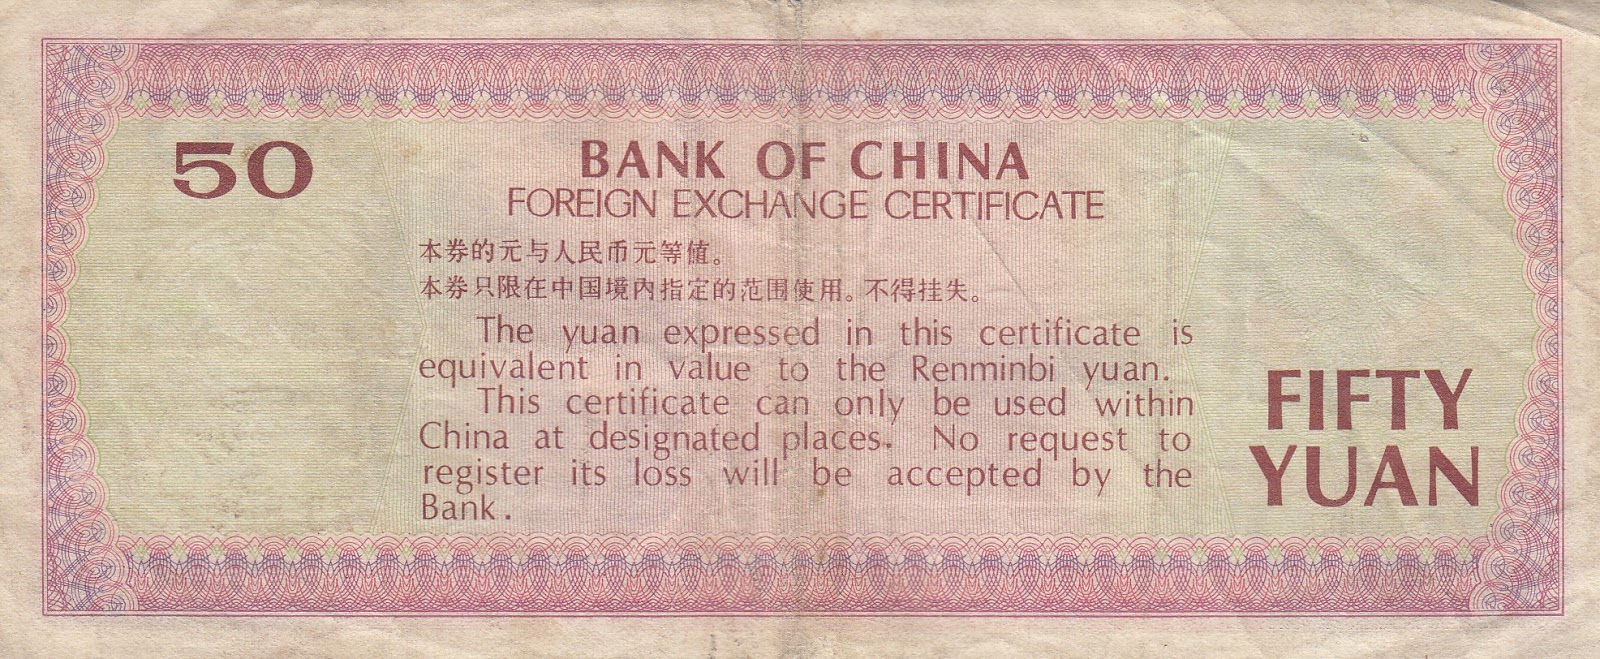 Купить юань в банках москвы. Купюра Китая 1988г. Foreign Exchange Certificate Bank of China. 50 1988 Китай. China China 1988.